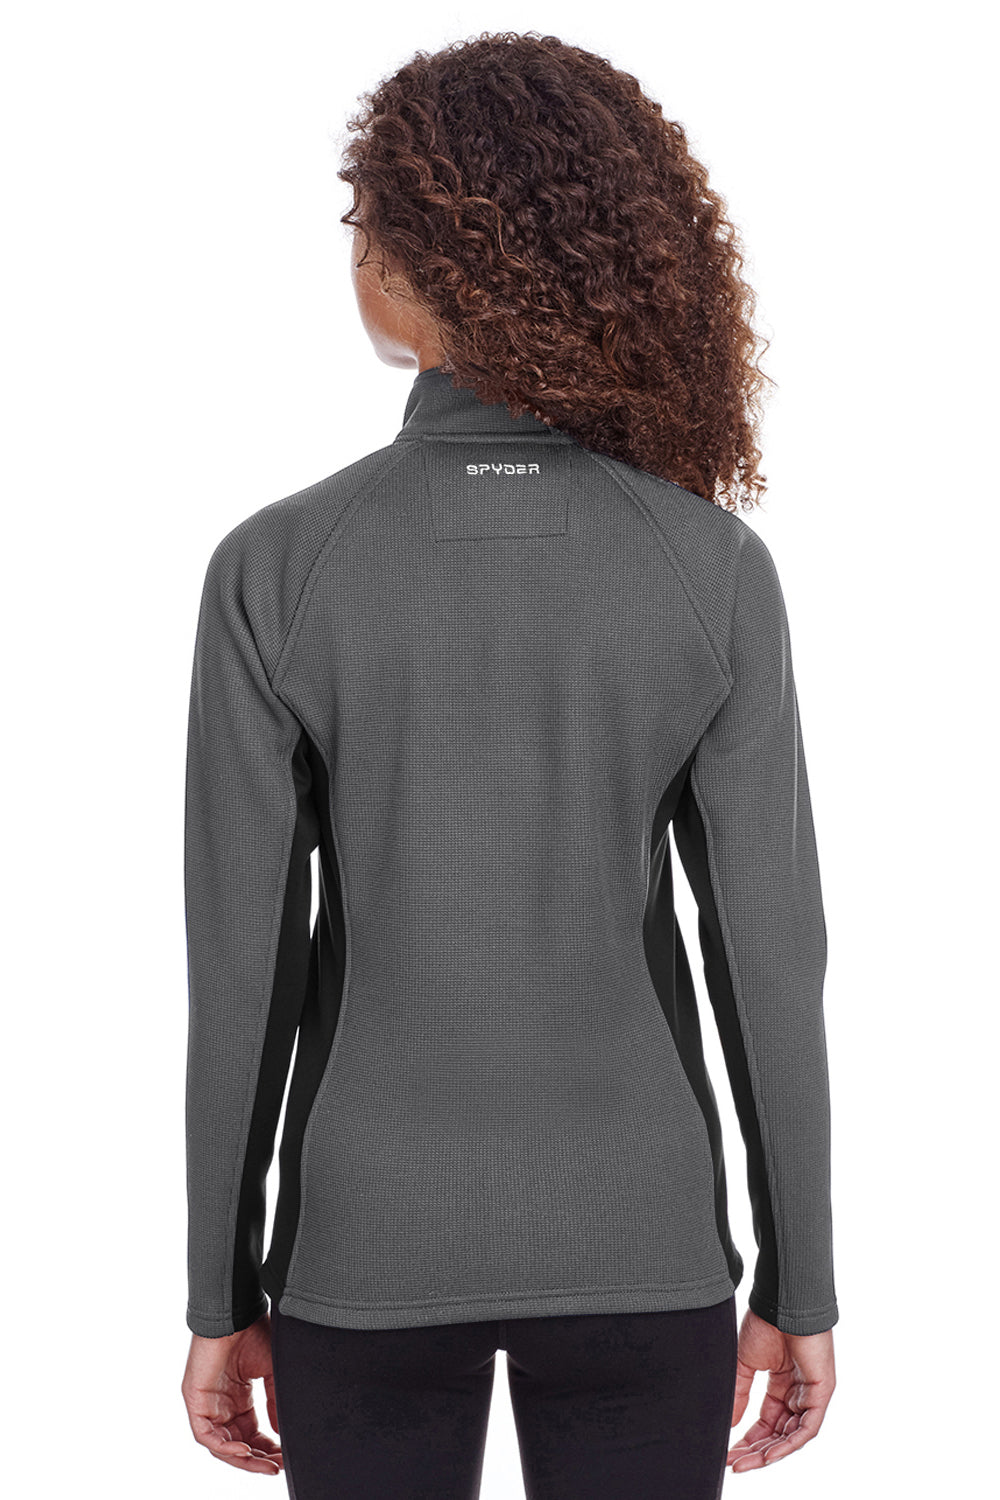 Spyder S16562 Womens Constant 1/4 Zip Sweater Grey Back